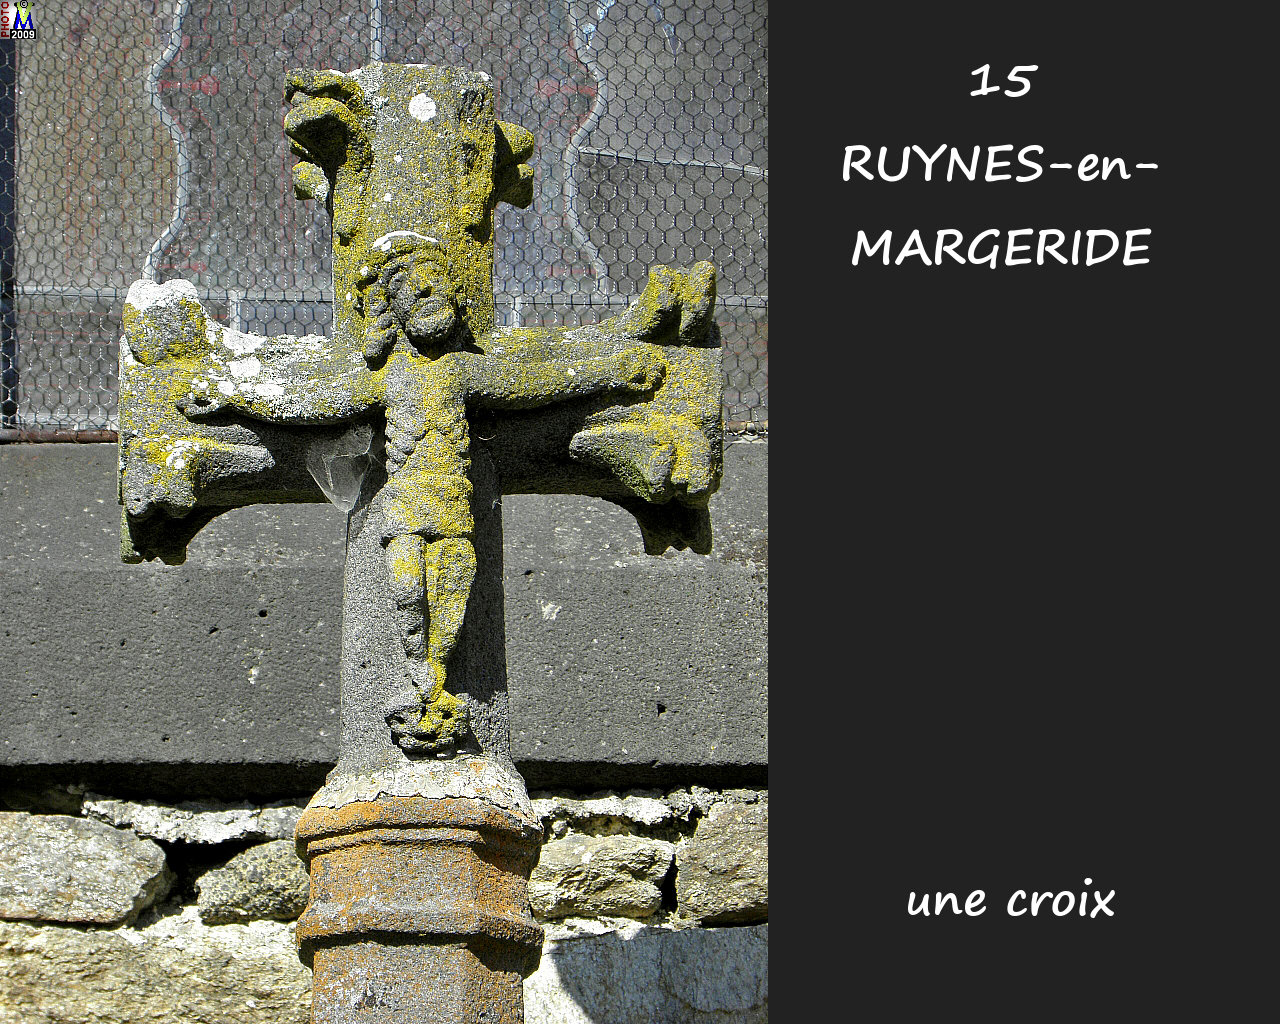 15RUYNES-MARGERIDE_croix_100.jpg